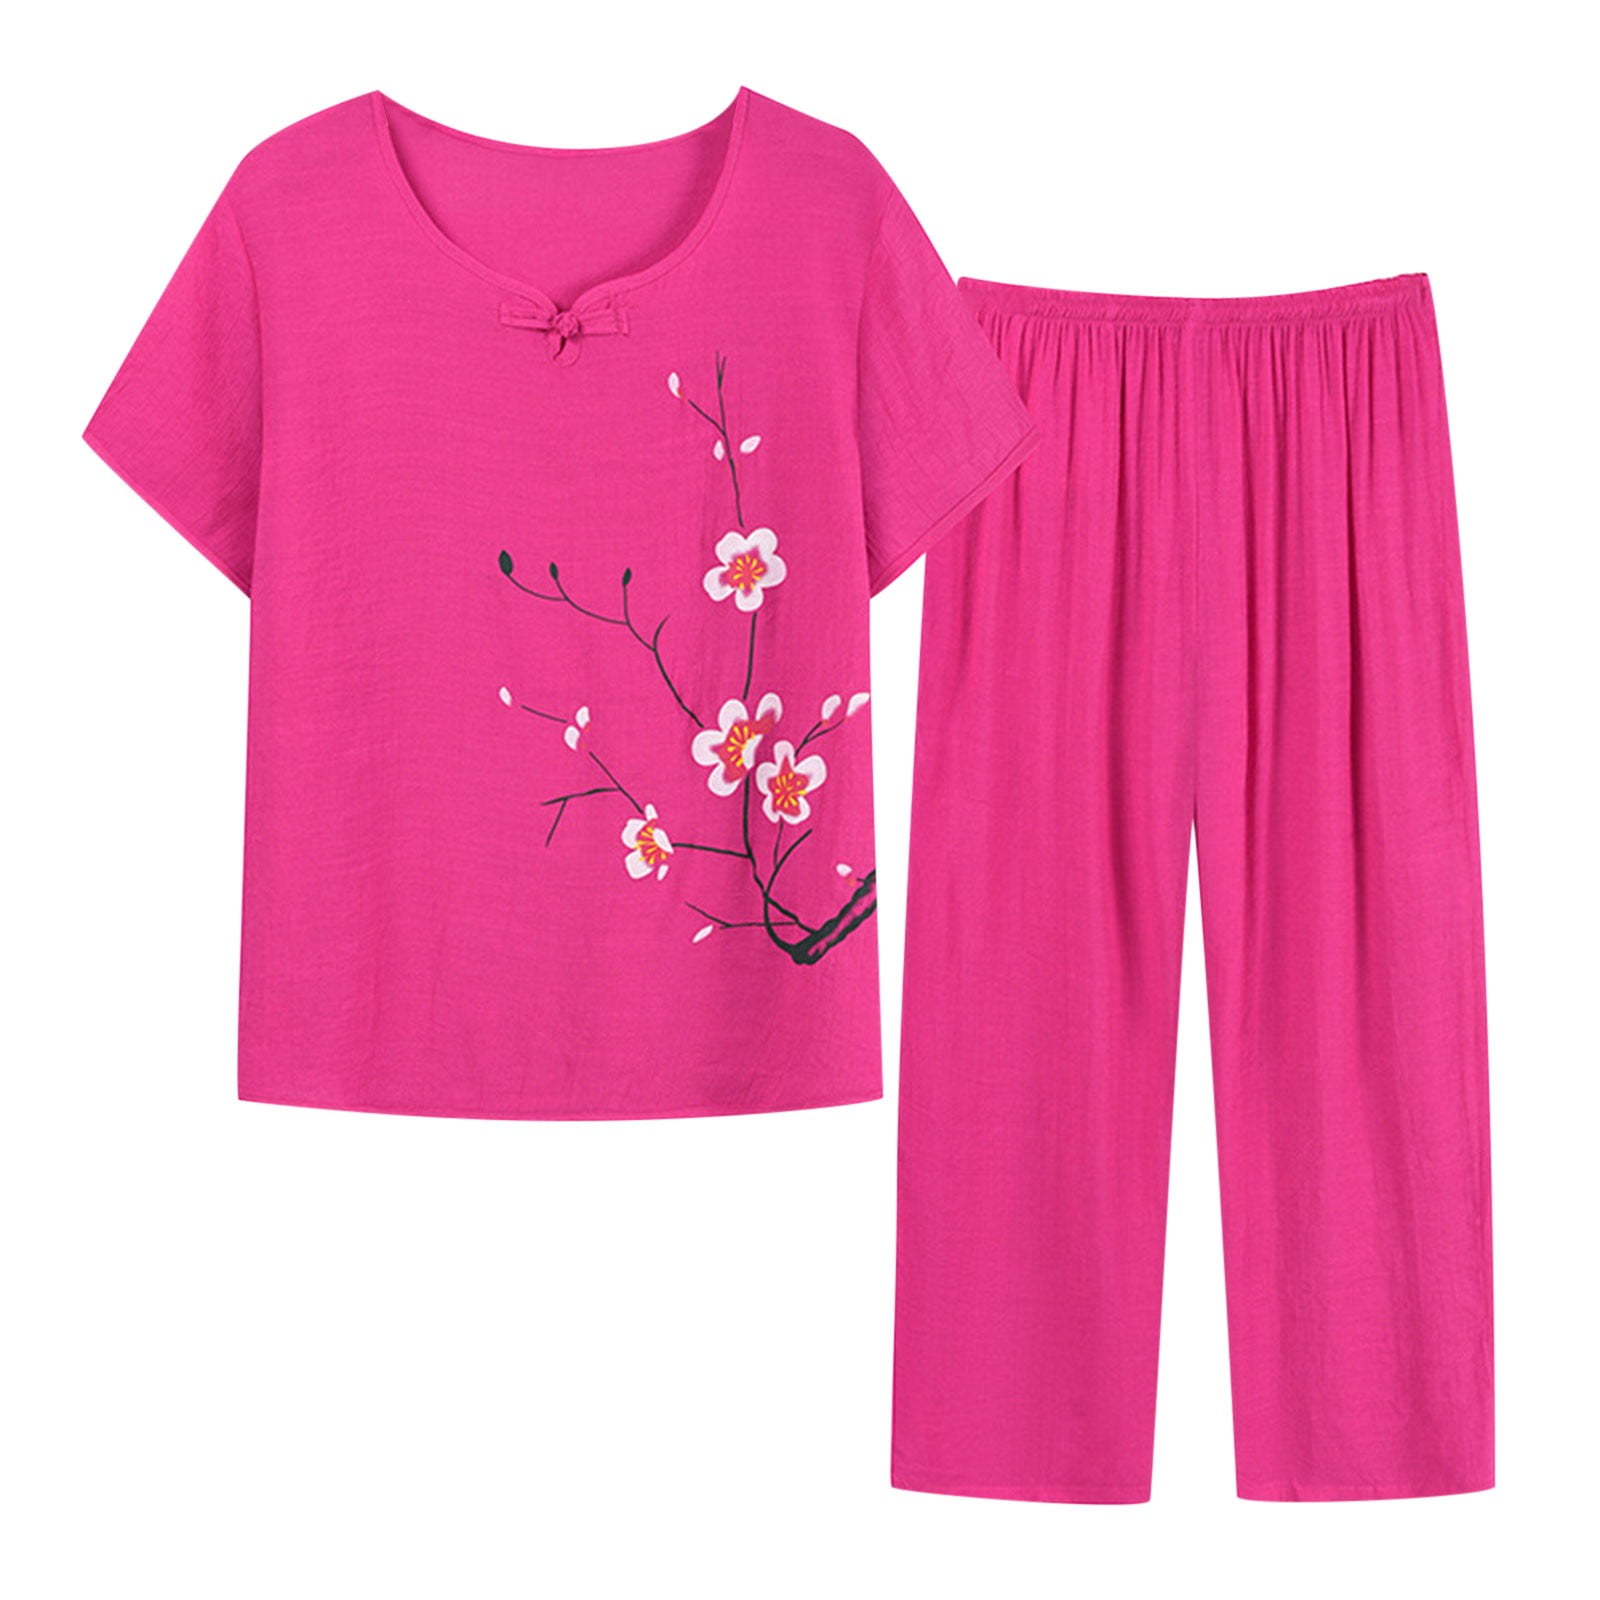 Plus Size 2 Piece Outfits for Women Summer Cotton Linen Lightweight ...